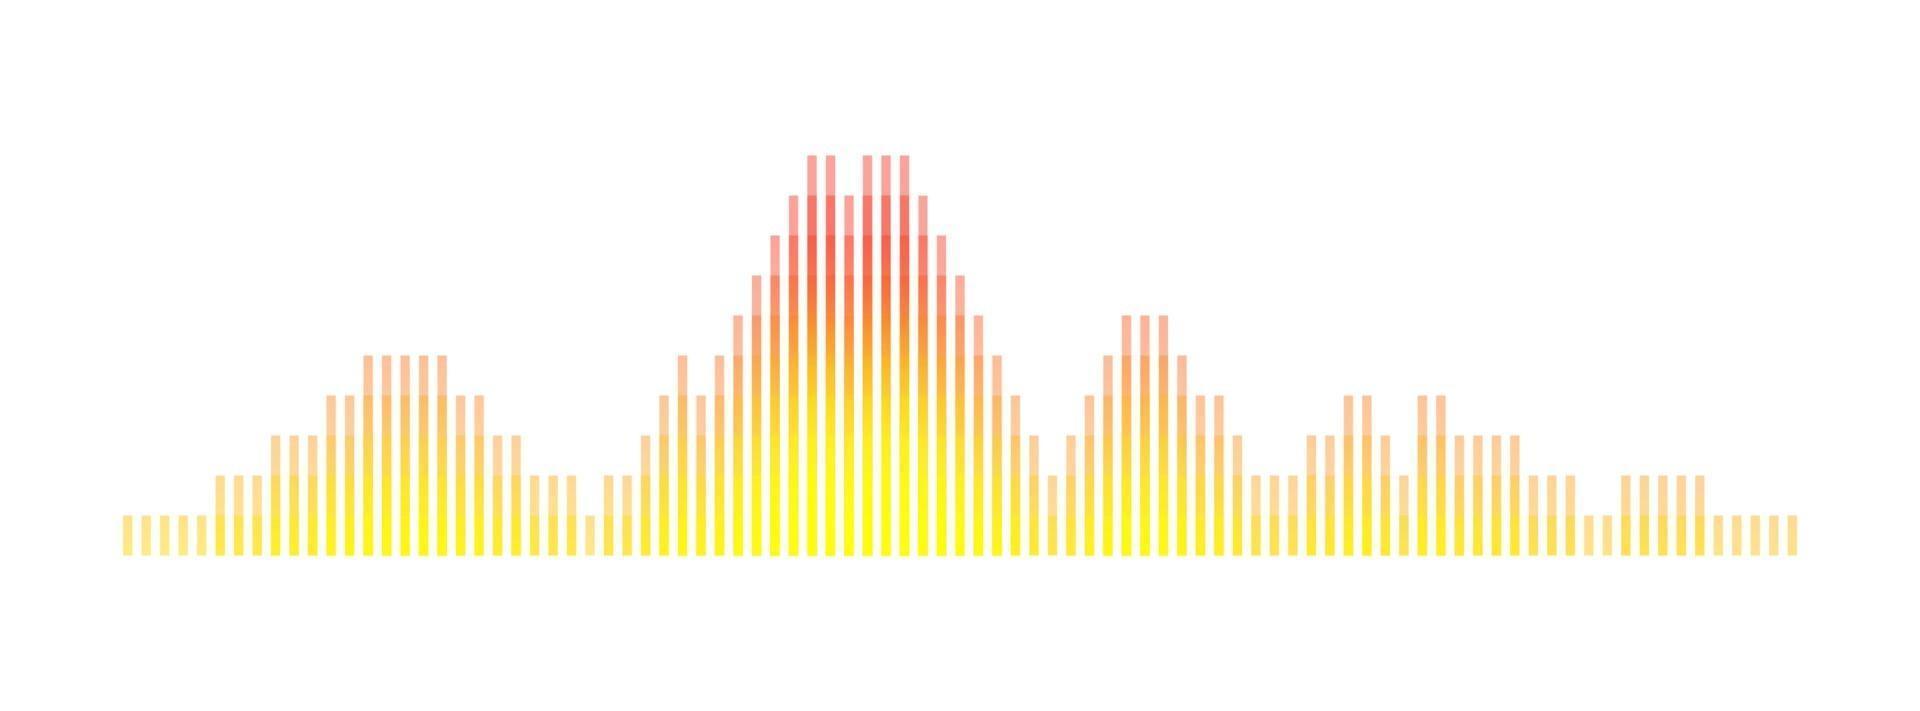 abstrakt ljudvåg visualisering teknik ljudspelare equalizer musik och röst digital signal koncept ledde grafisk dj beat spektrum lager vektorillustration vektor